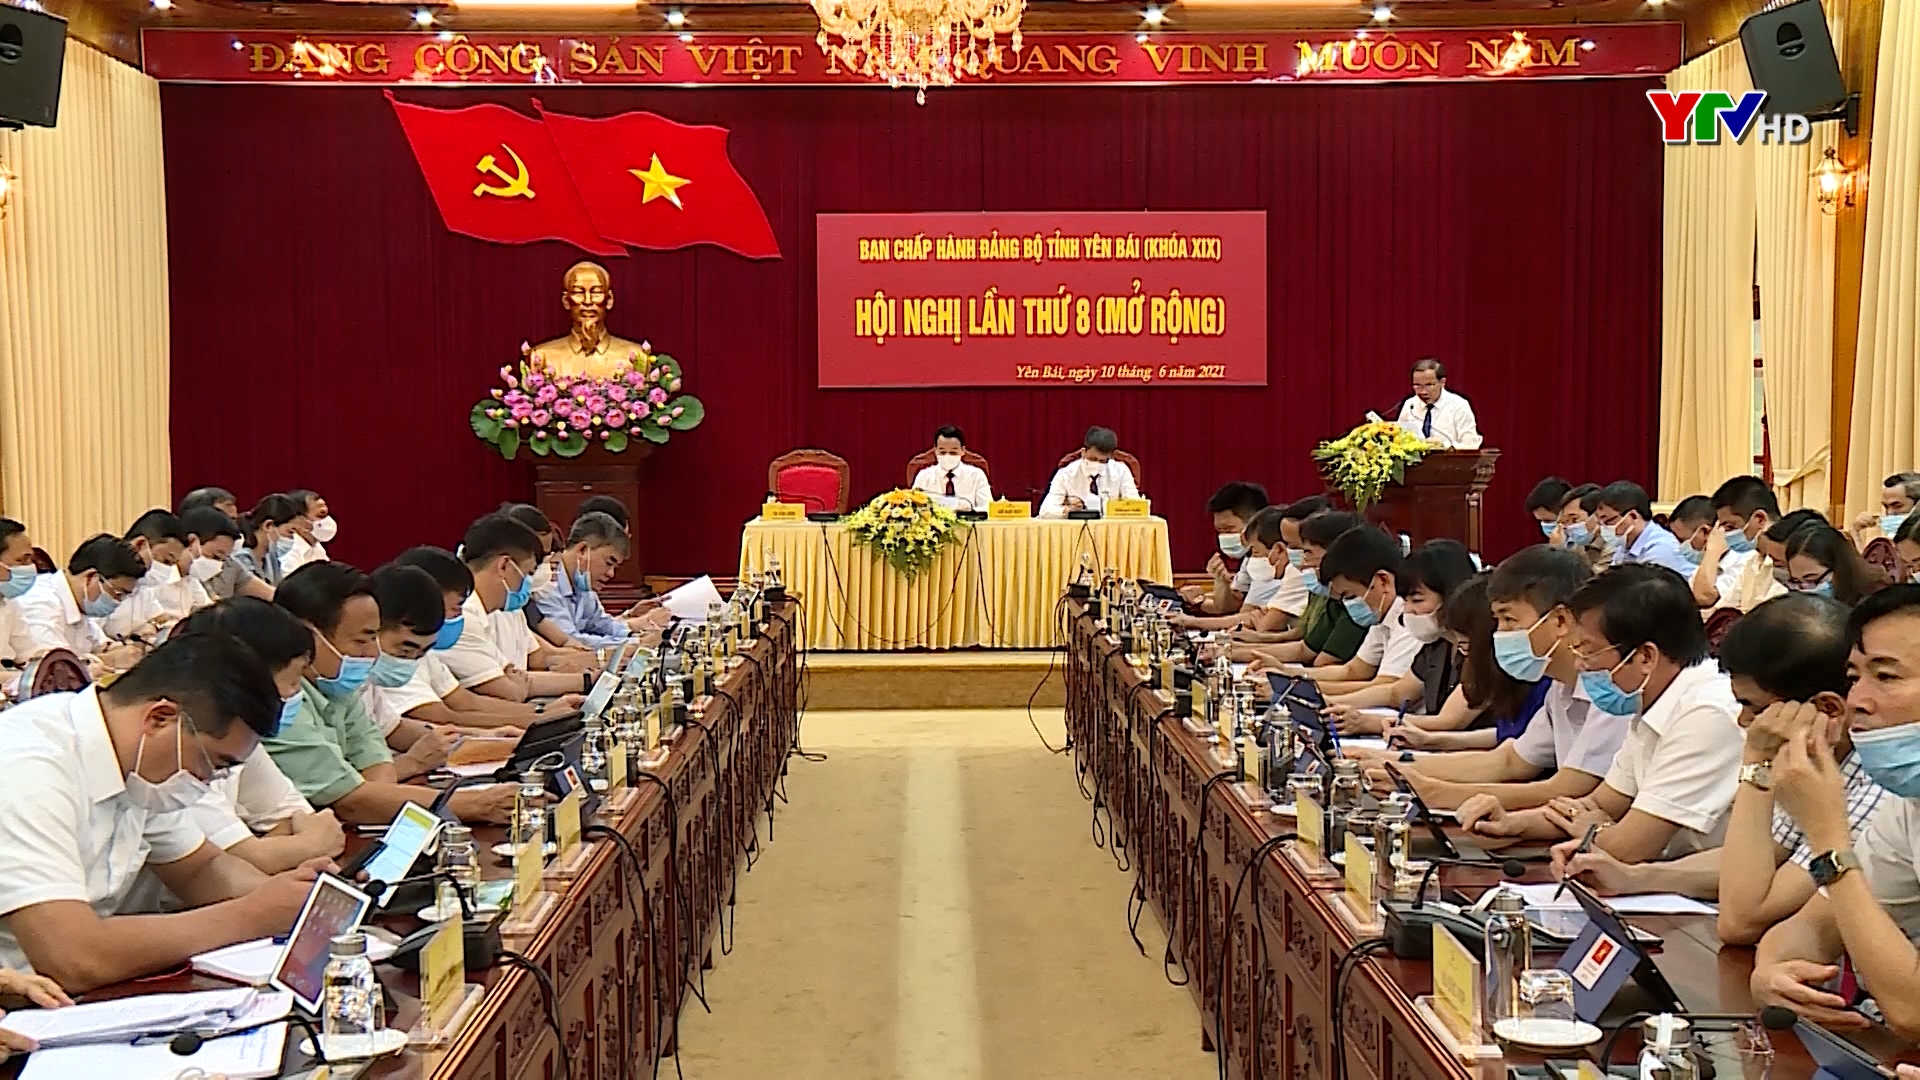 Hội nghị Ban Chấp hành Đảng bộ tỉnh Yên Bái lần thứ 8 ( mở rộng)